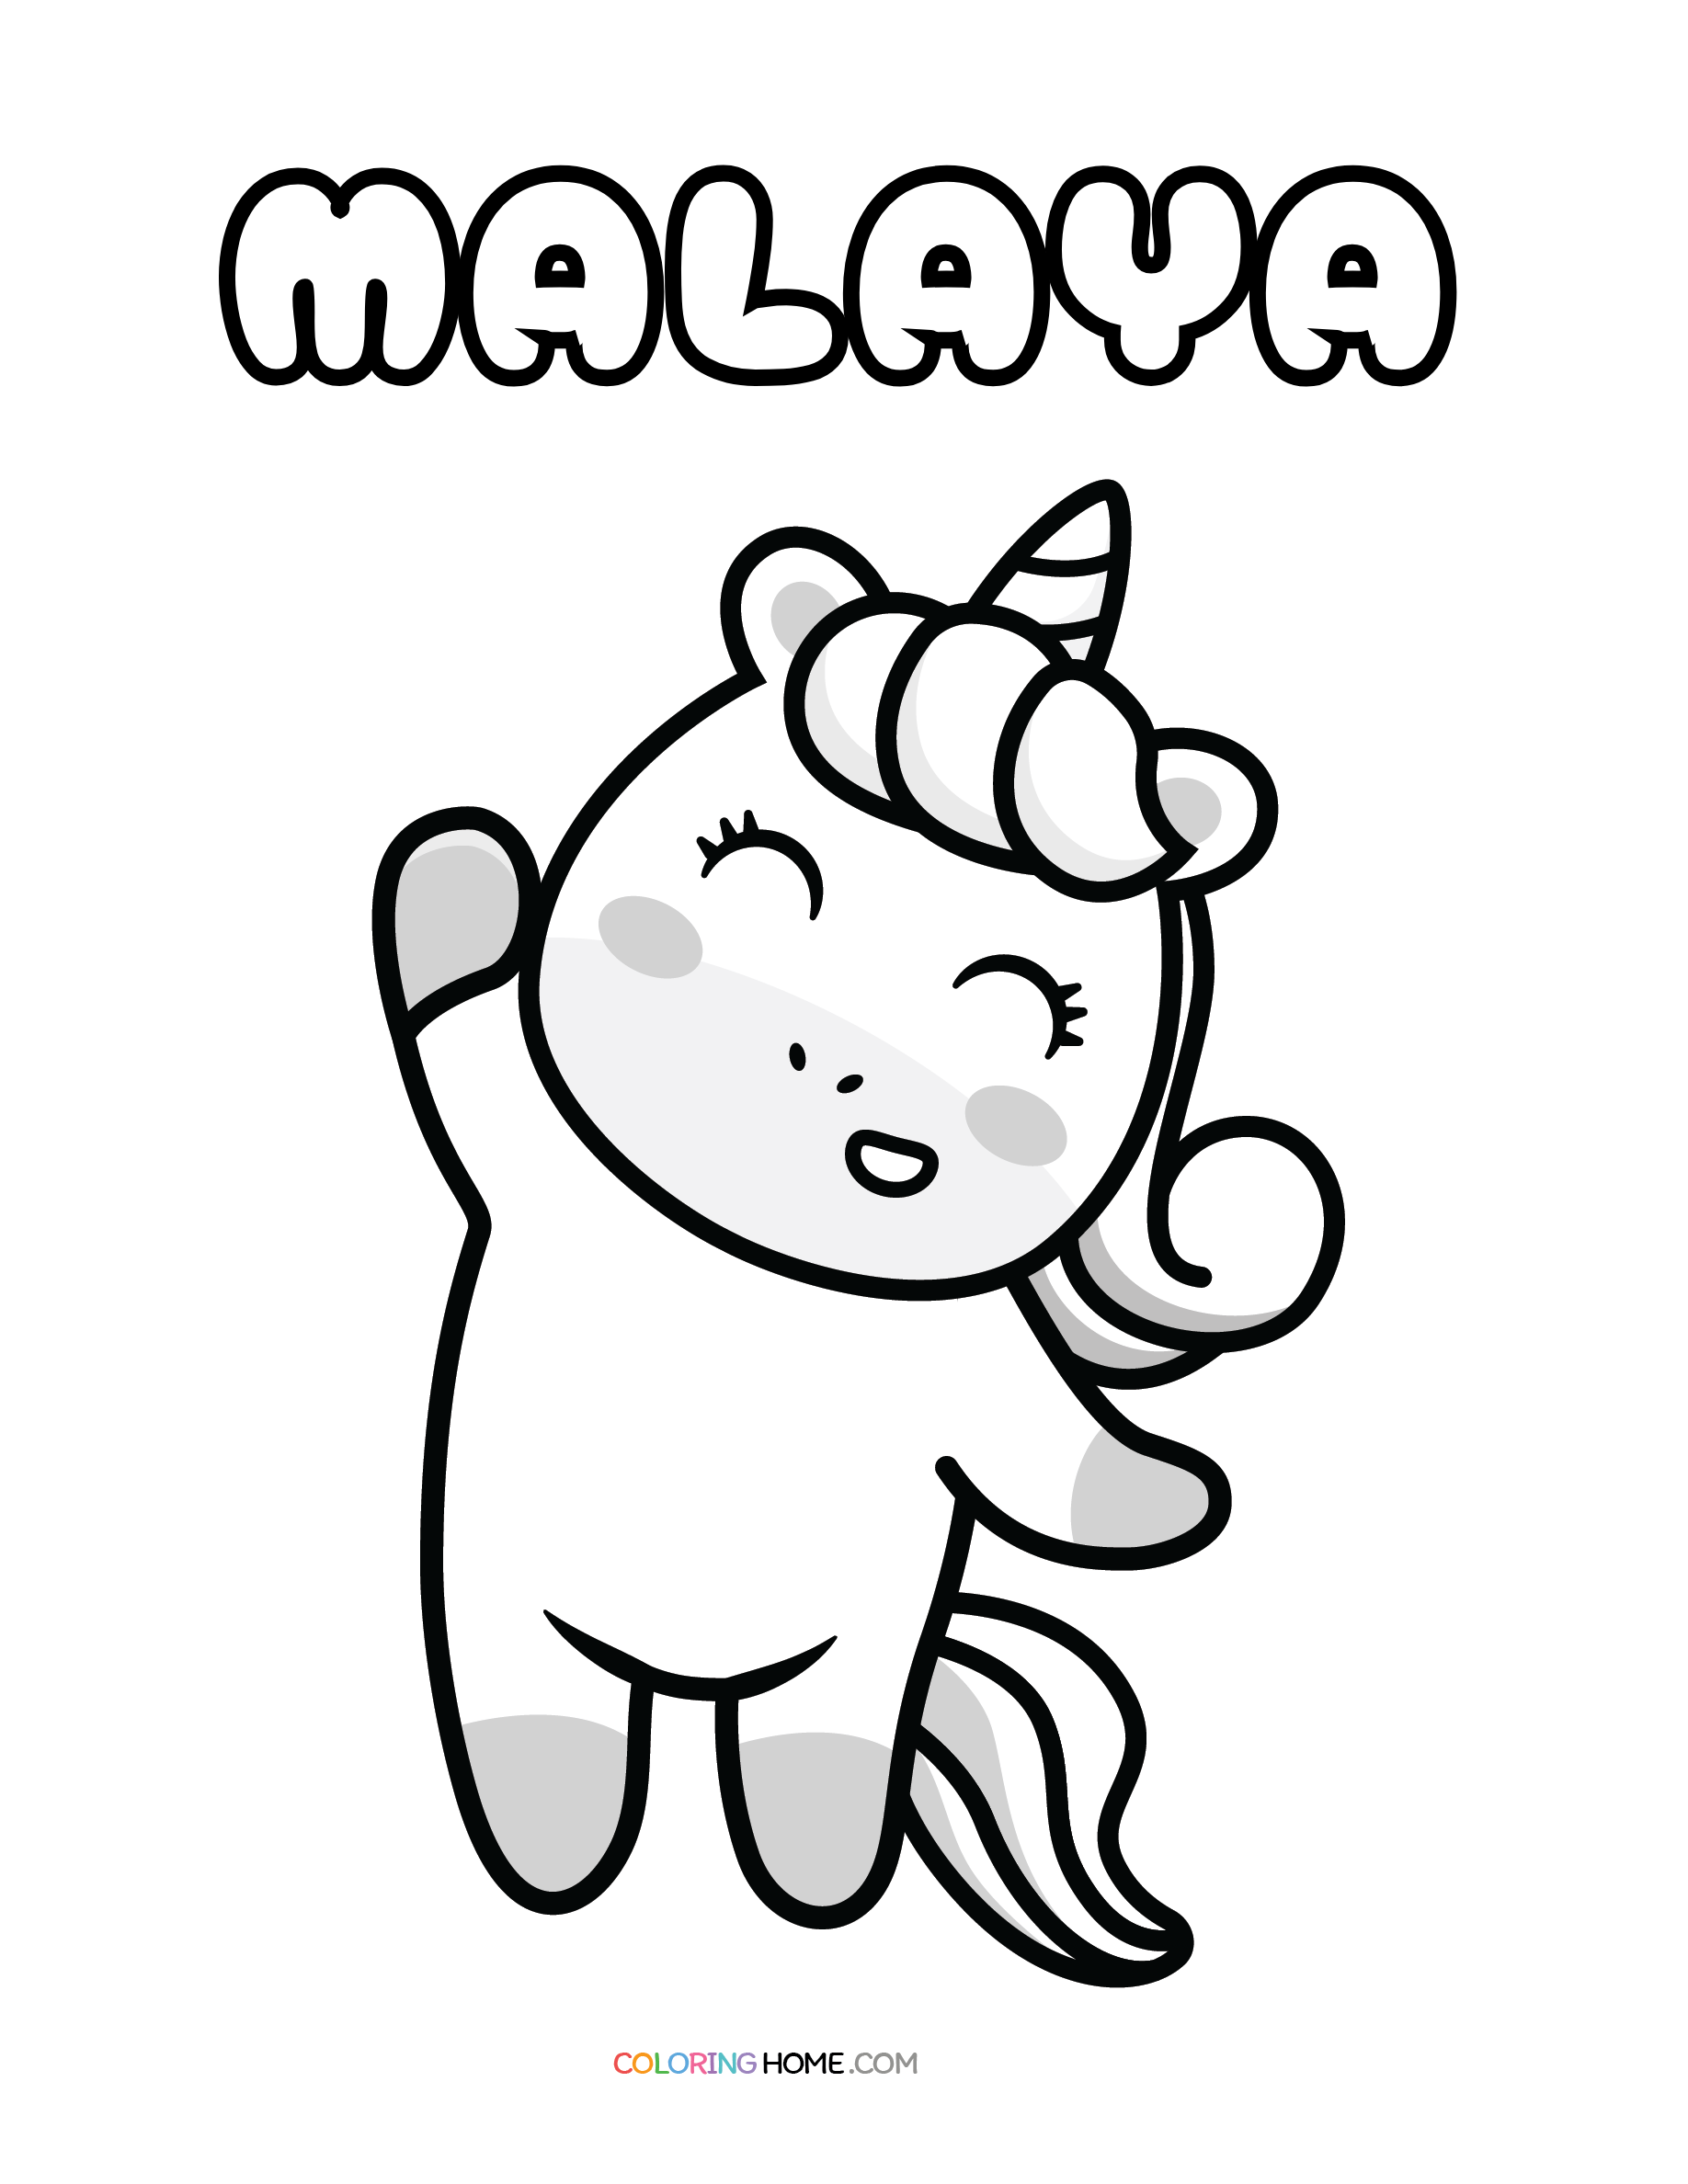 Malaya unicorn coloring page